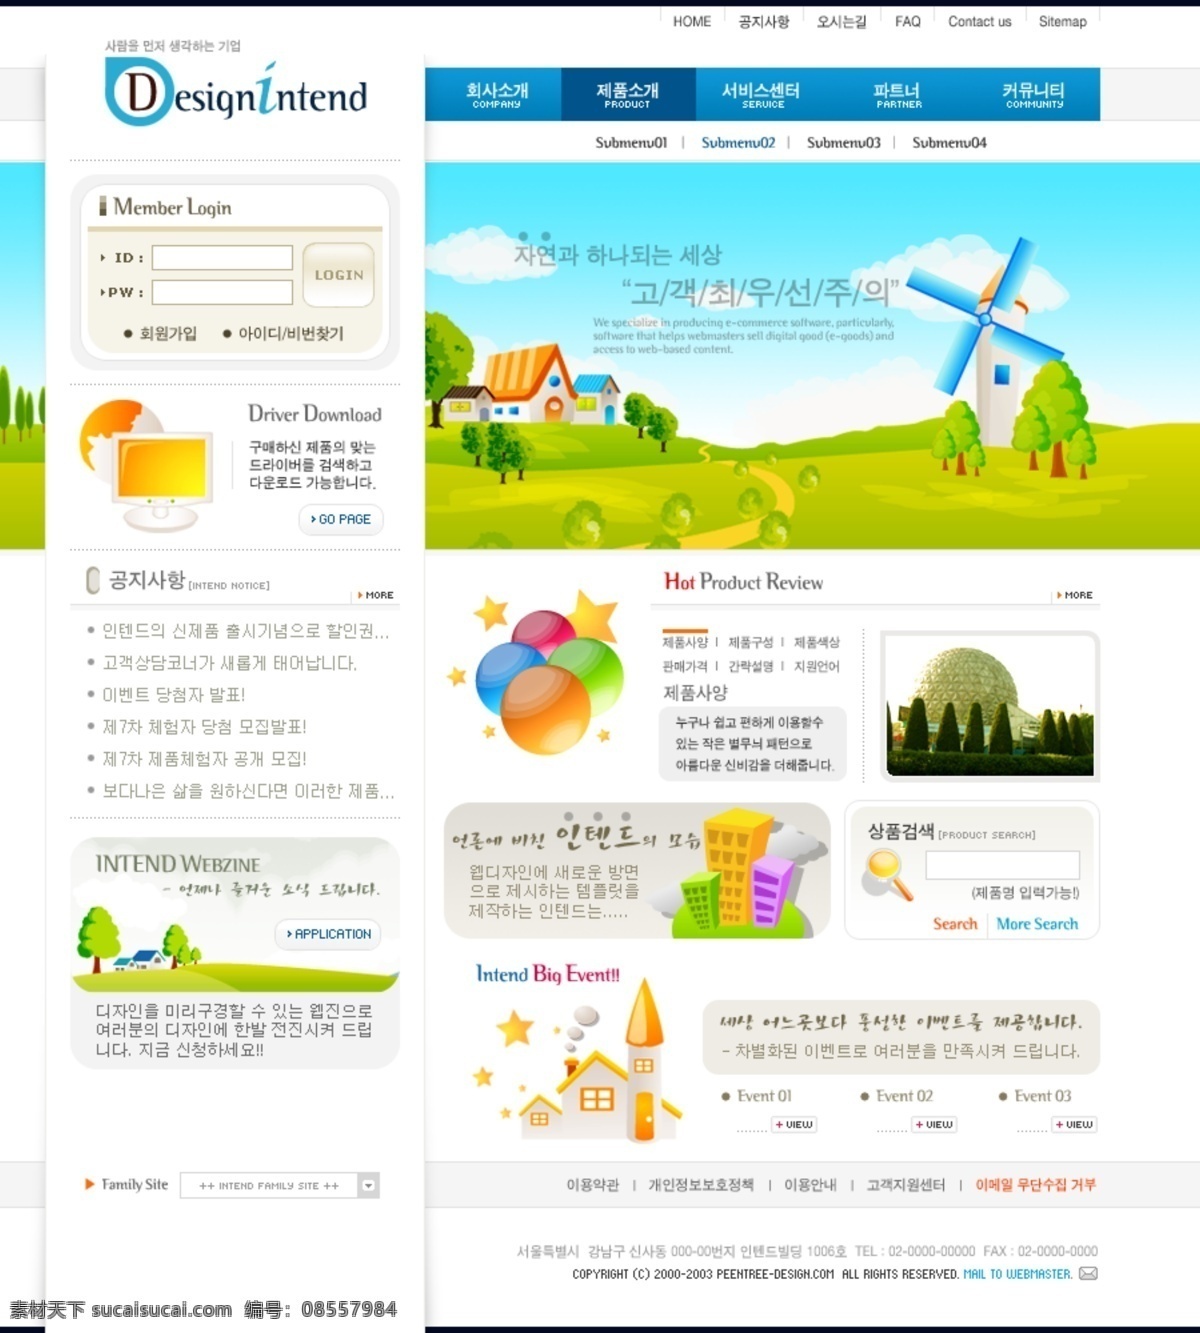 韩国 网页设计 模板 三 十 四 成 杓 颇 迦 夭 南 略 白色